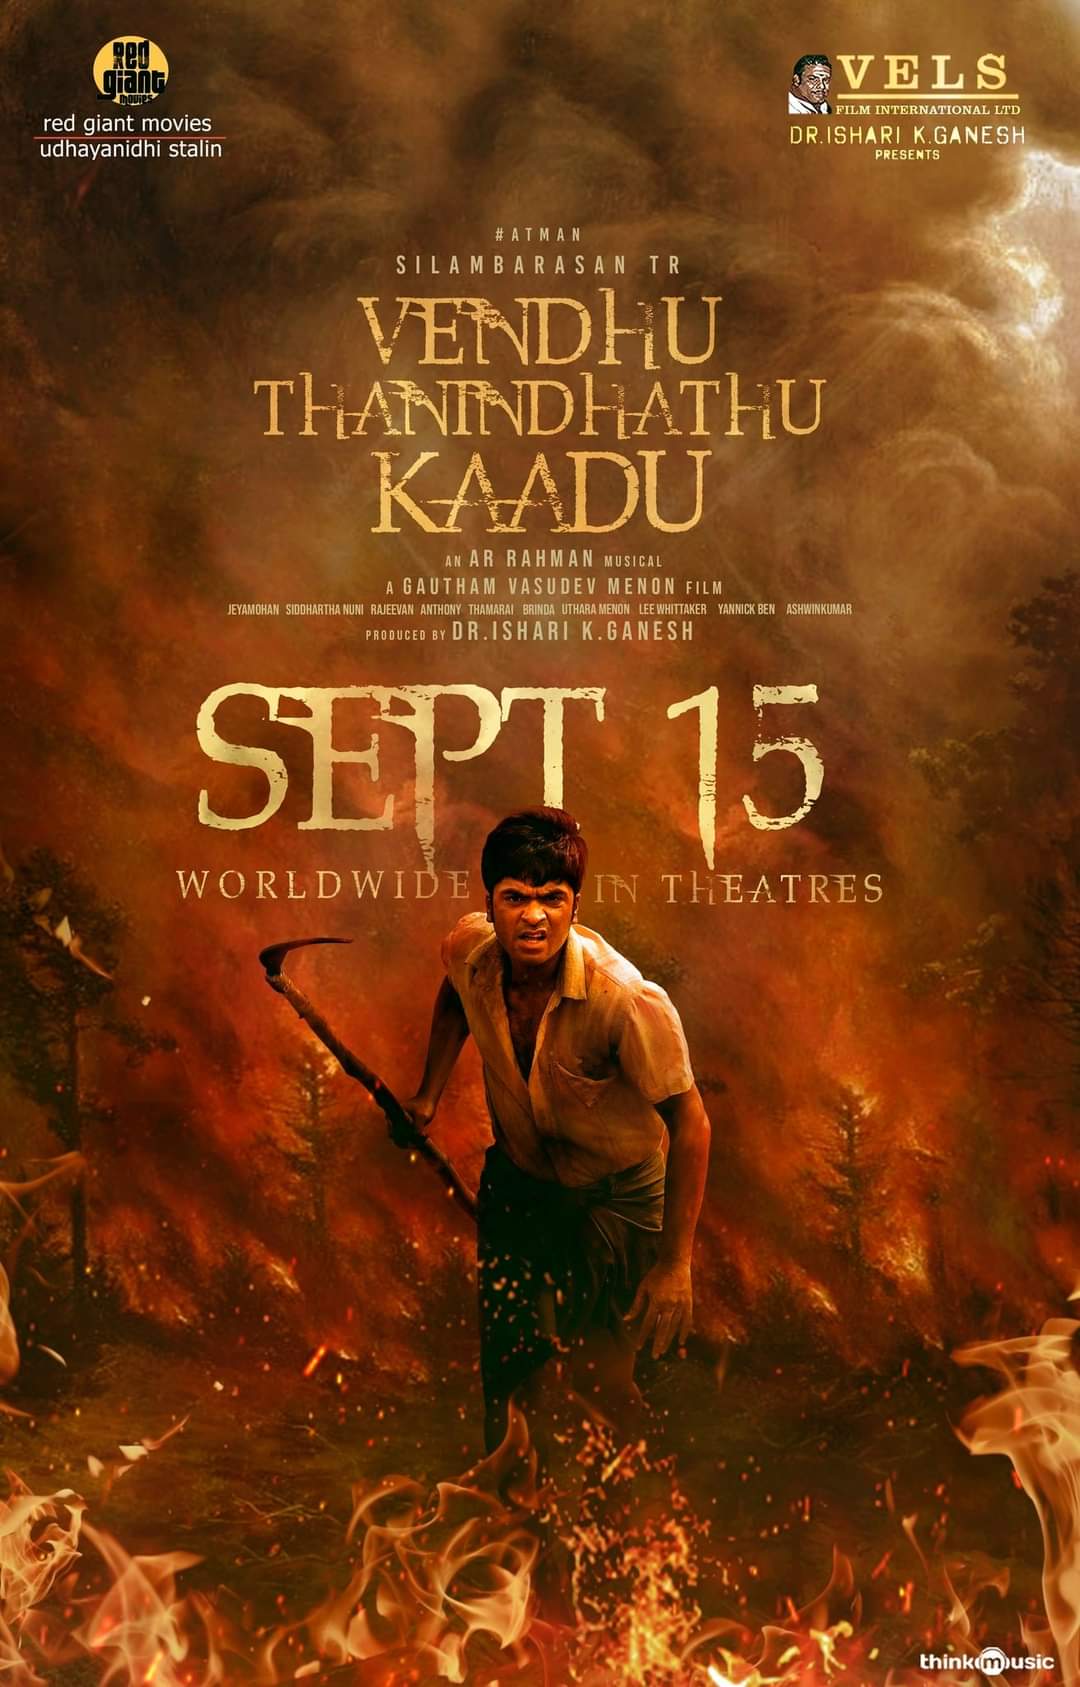 Venthu Thaninthathu Kaadu Movie Update from Siddhi Idnani